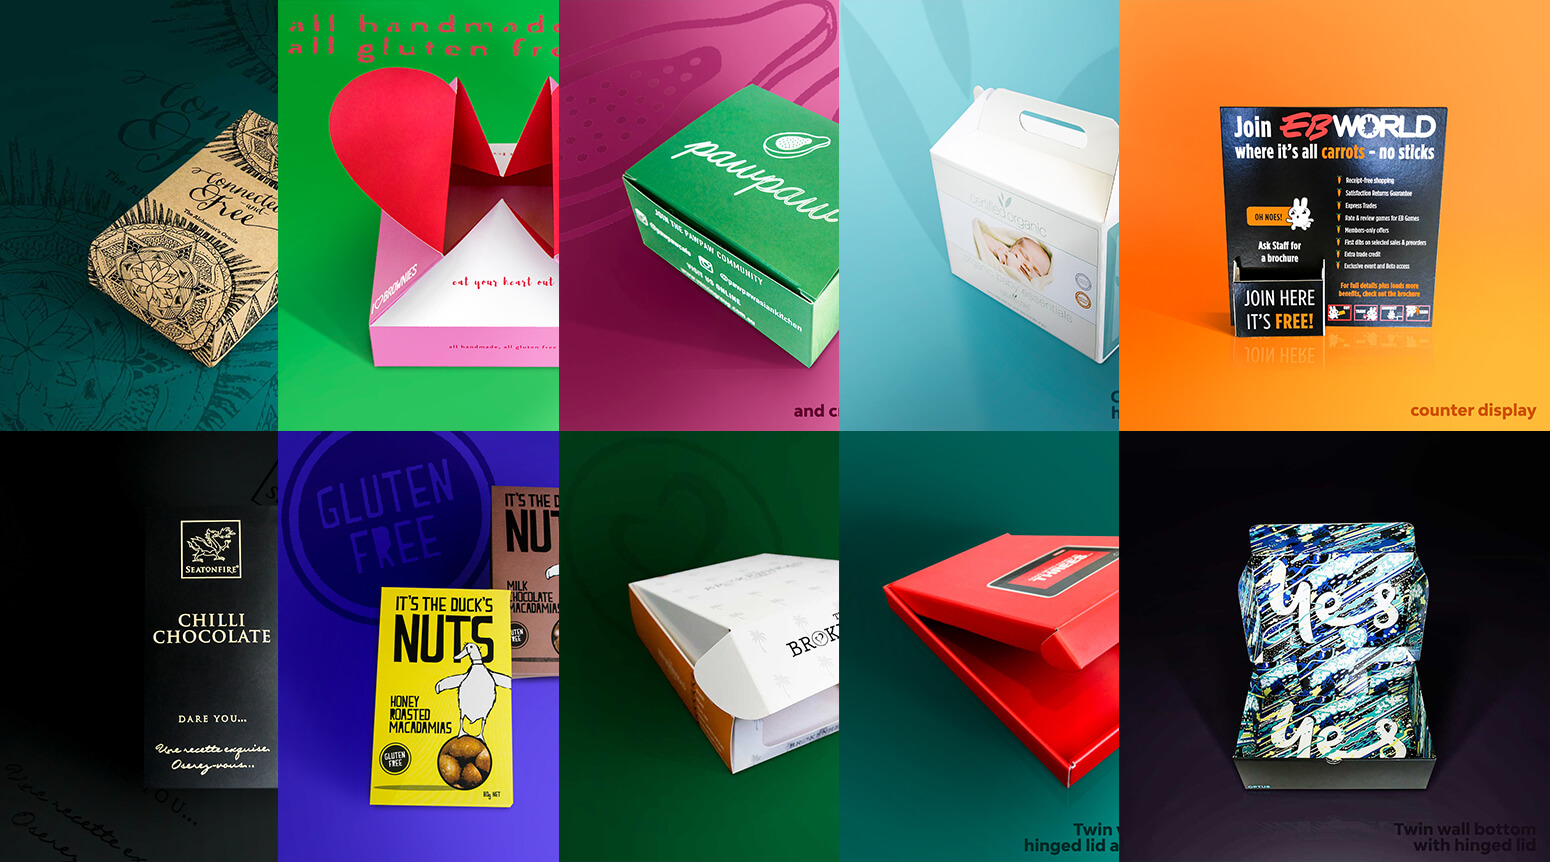 Pakko's cardboard products branded as fun